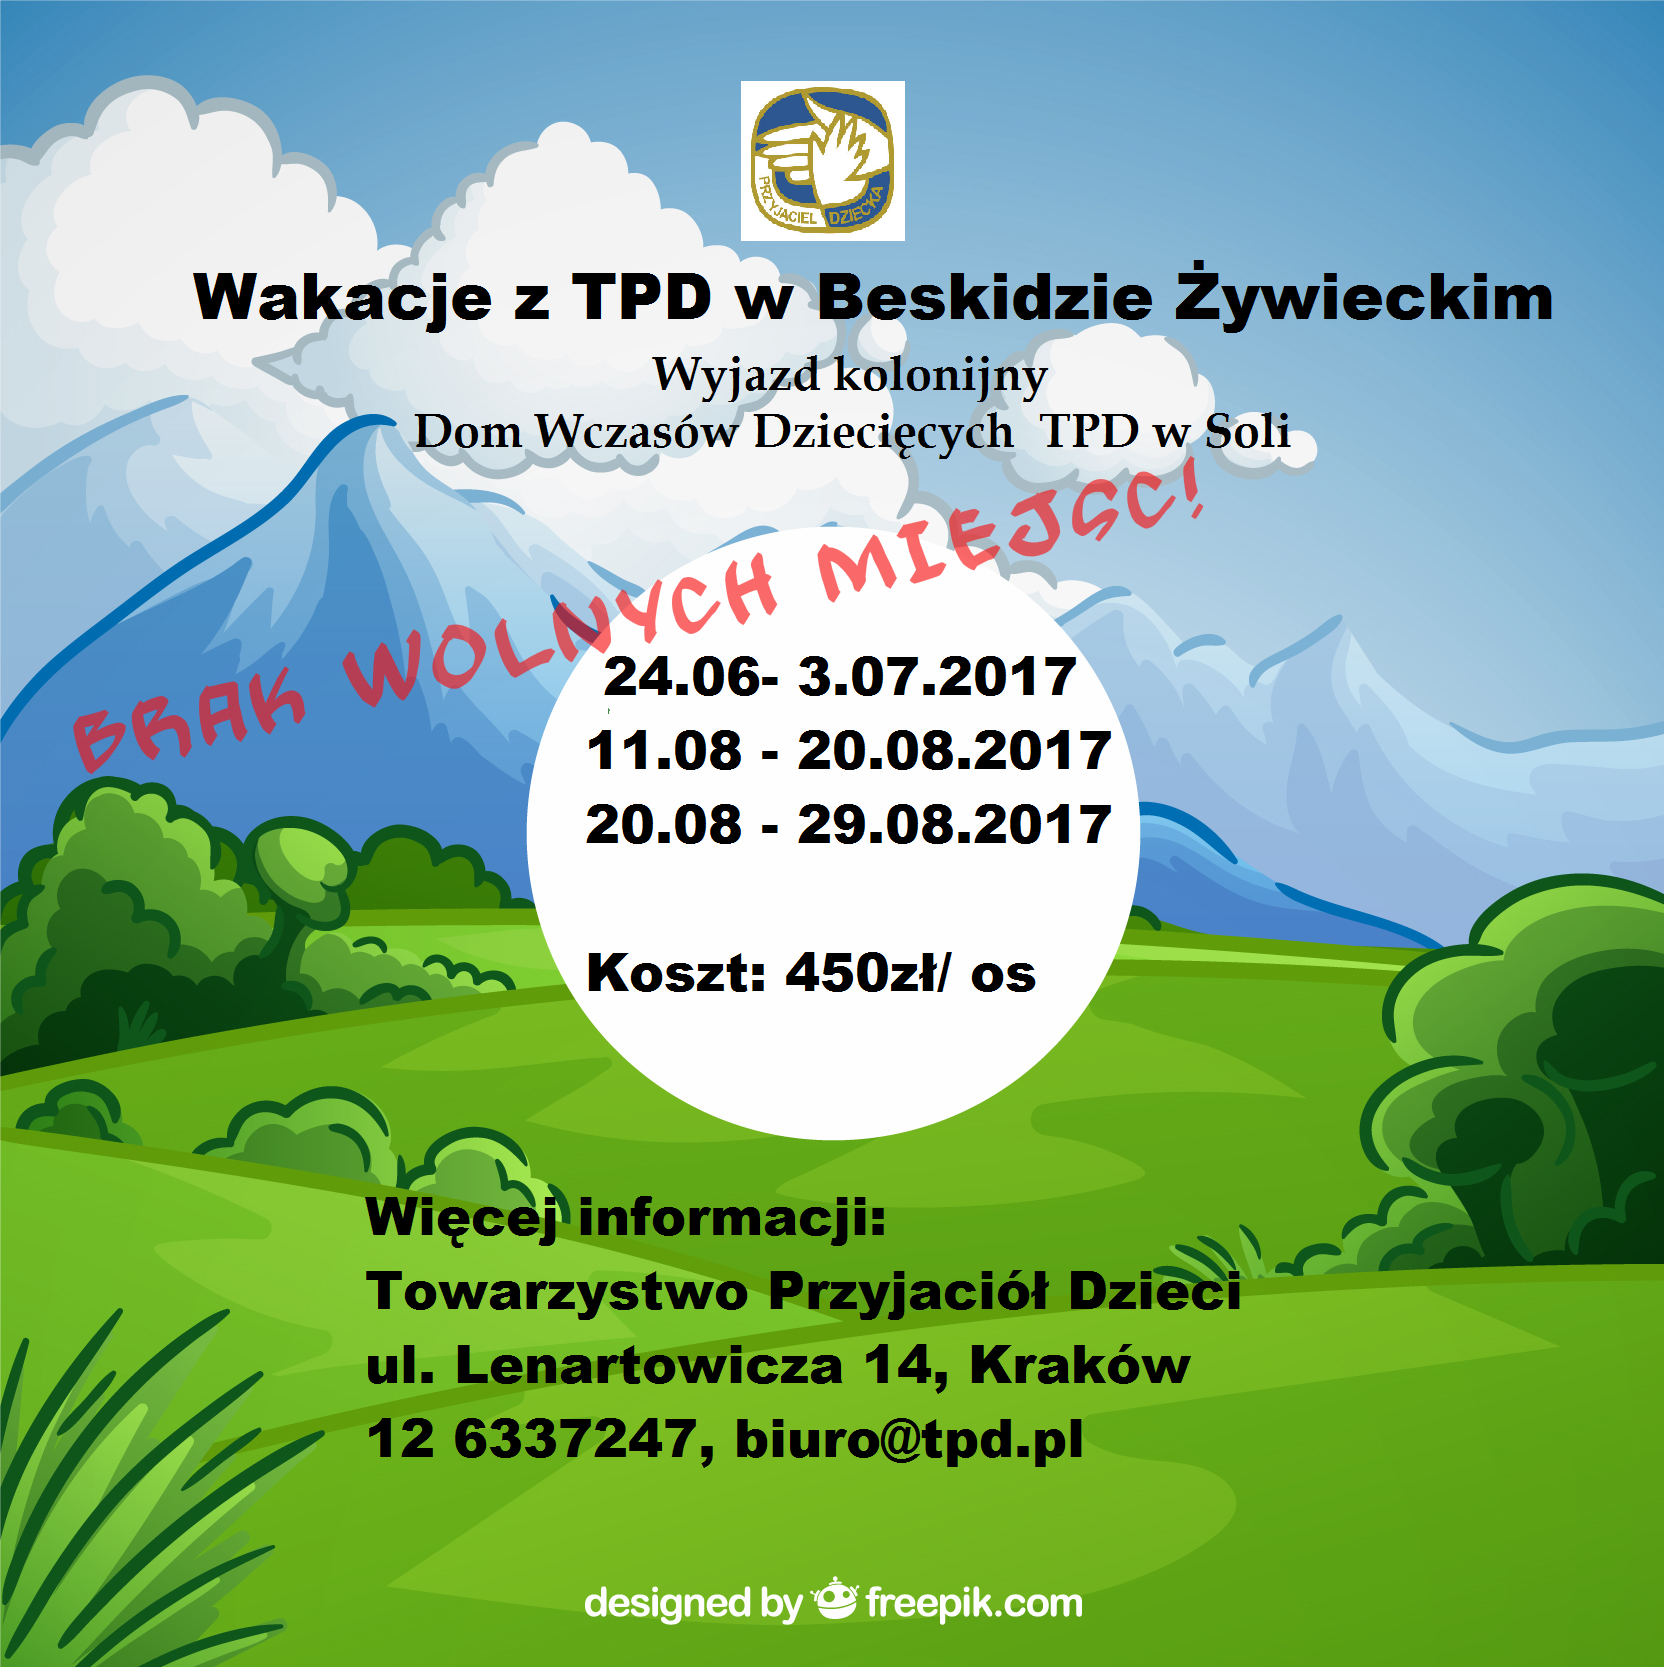 You are currently viewing Wakacje z TPD w Beskidzie Żywieckim